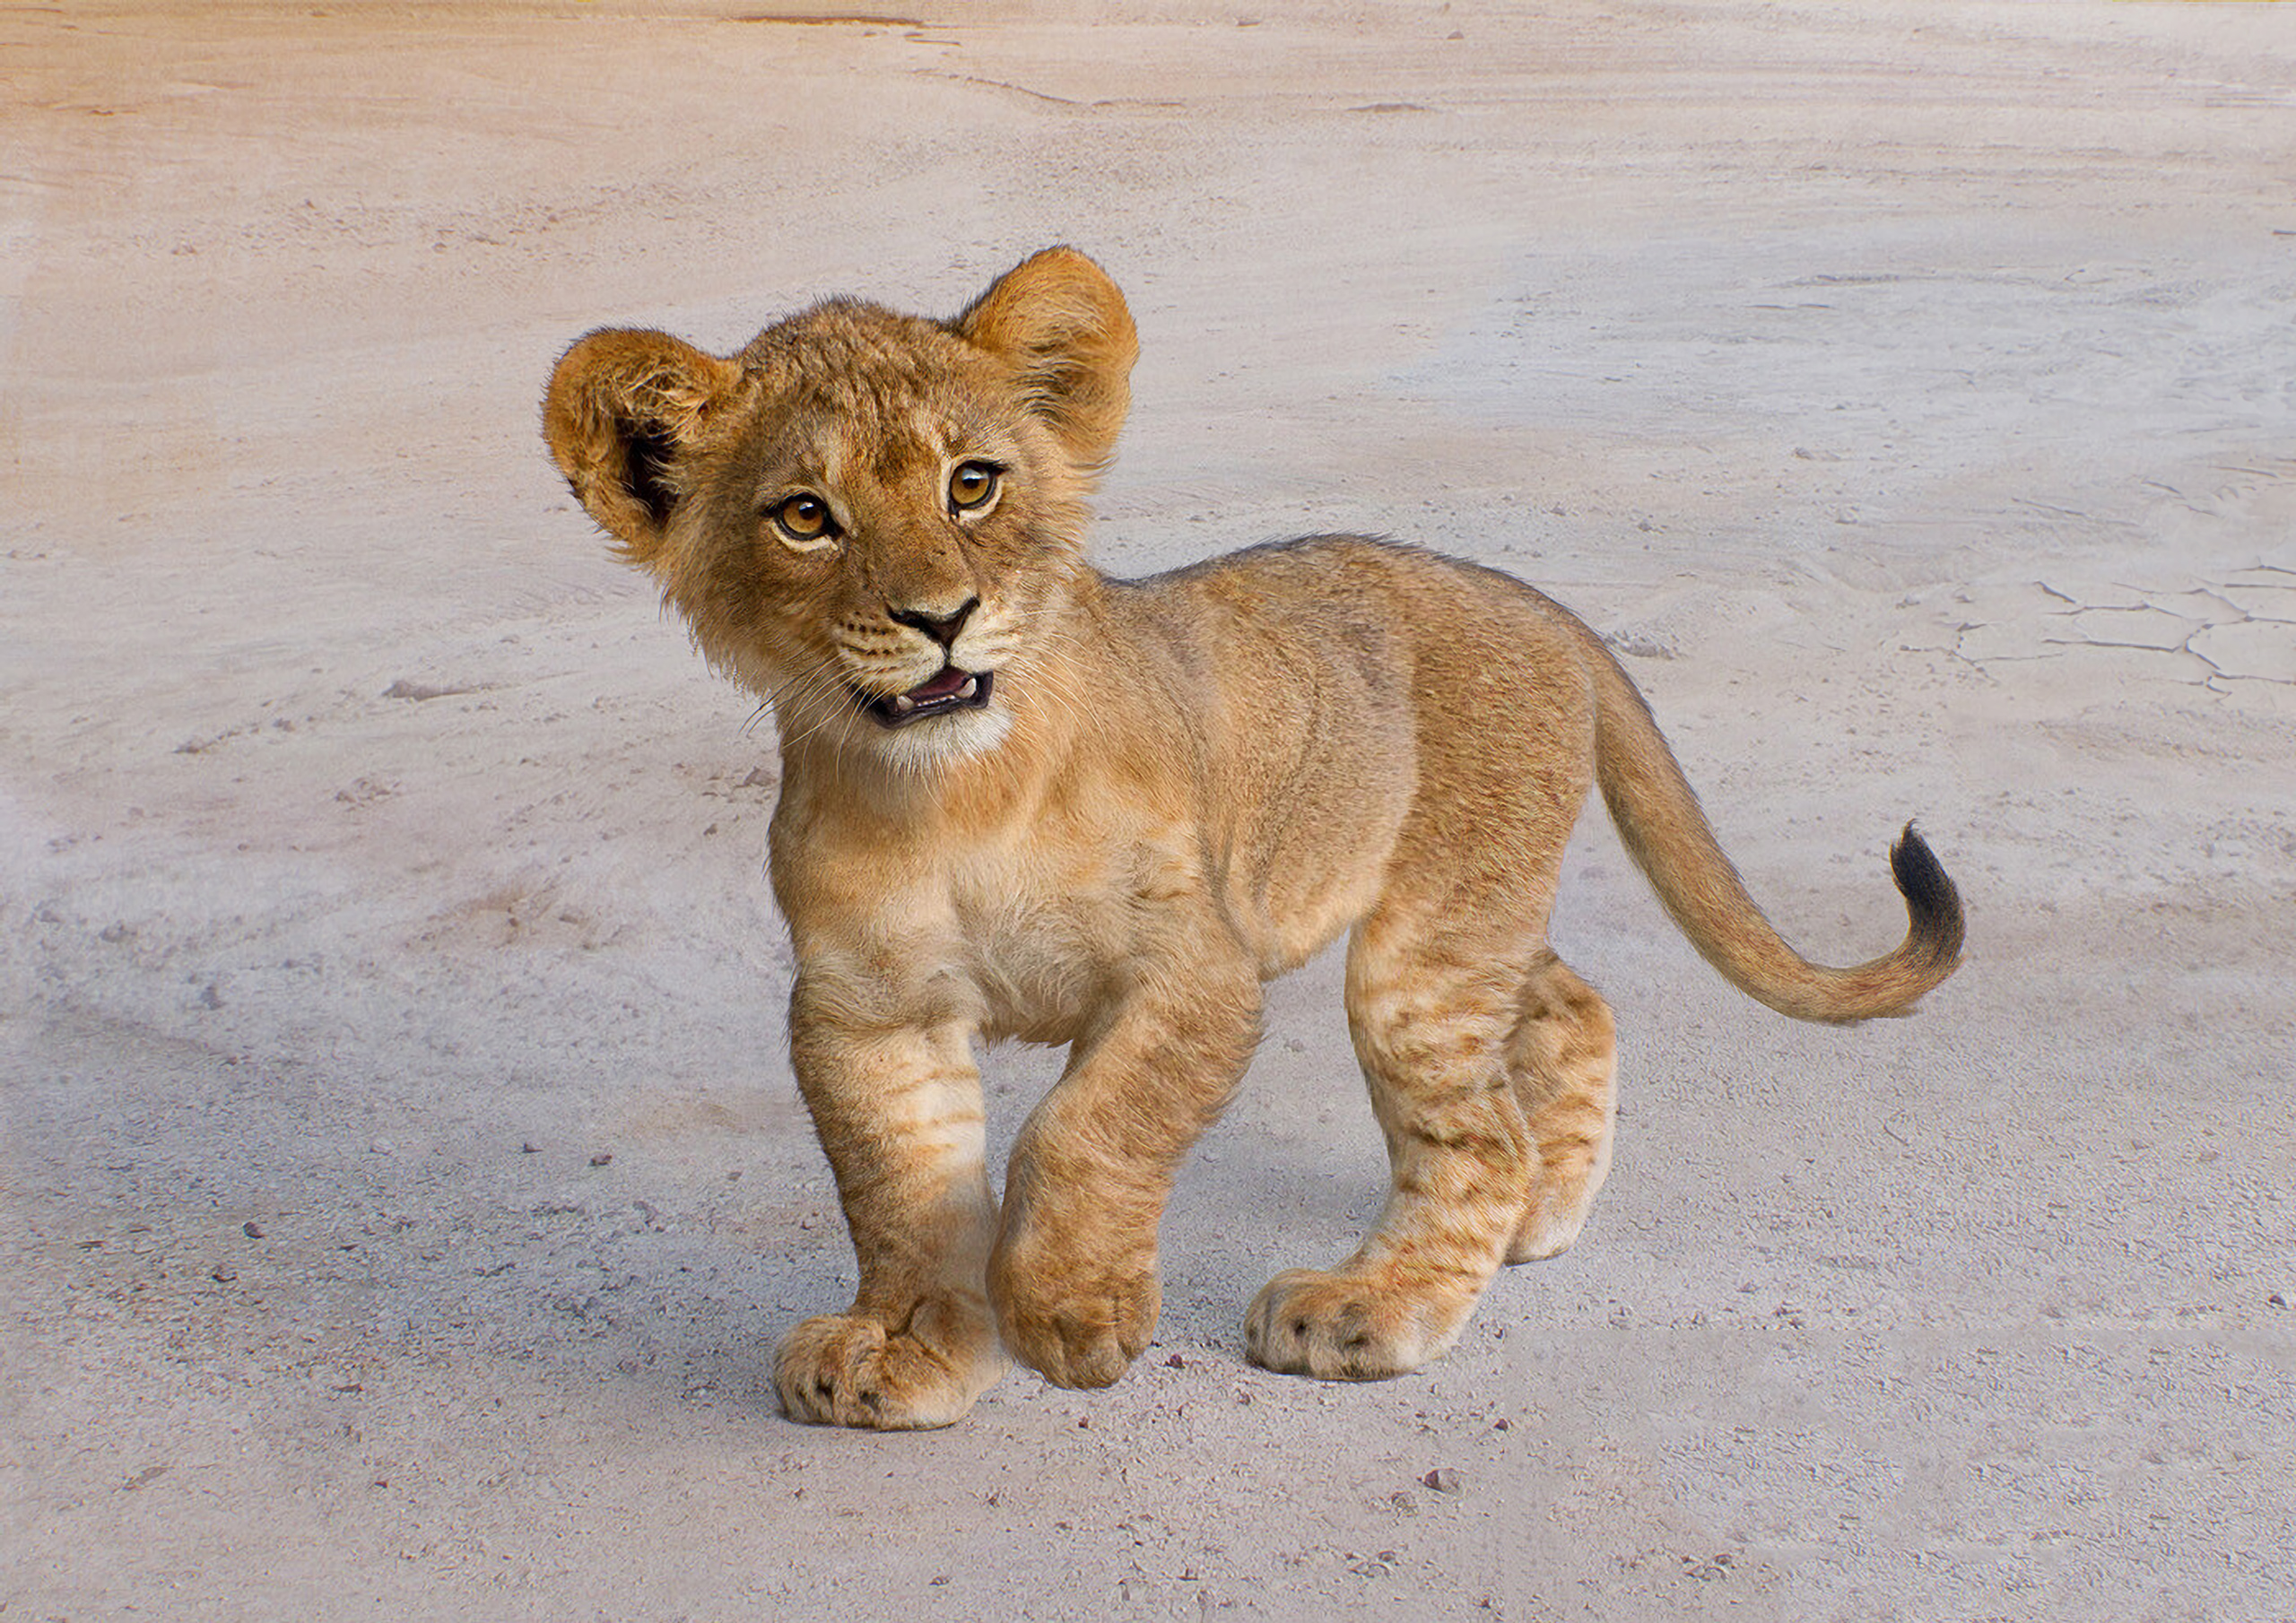 Cute lion cub Simba